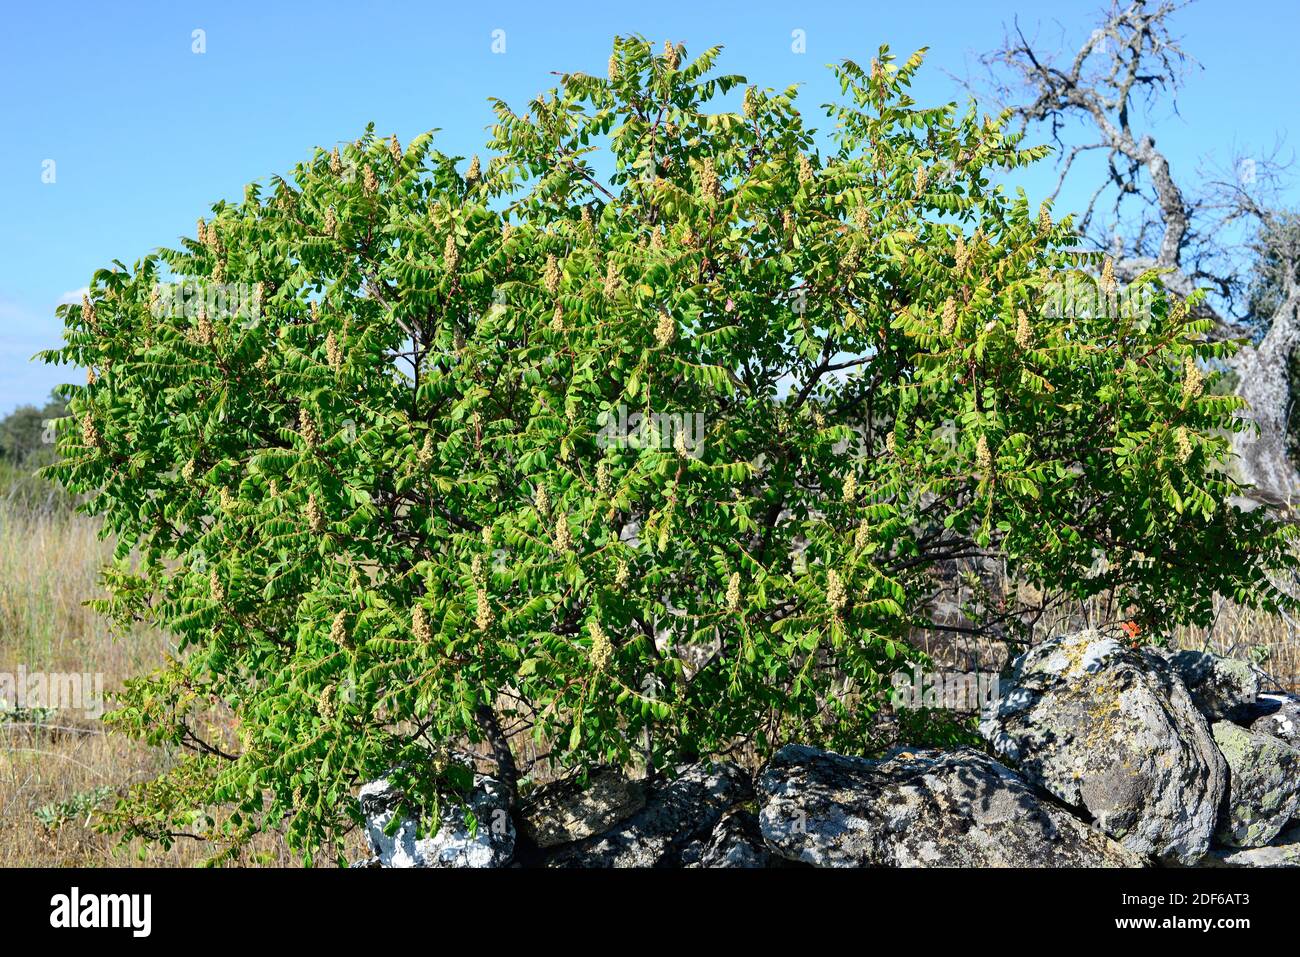 Il sumac siciliano o tanner´s sumach (Rhus coriaria) è un arbusto deciduo originario dell'Europa meridionale. Viene utilizzato per la pelle abbronzante. Angiospermi. Foto Stock